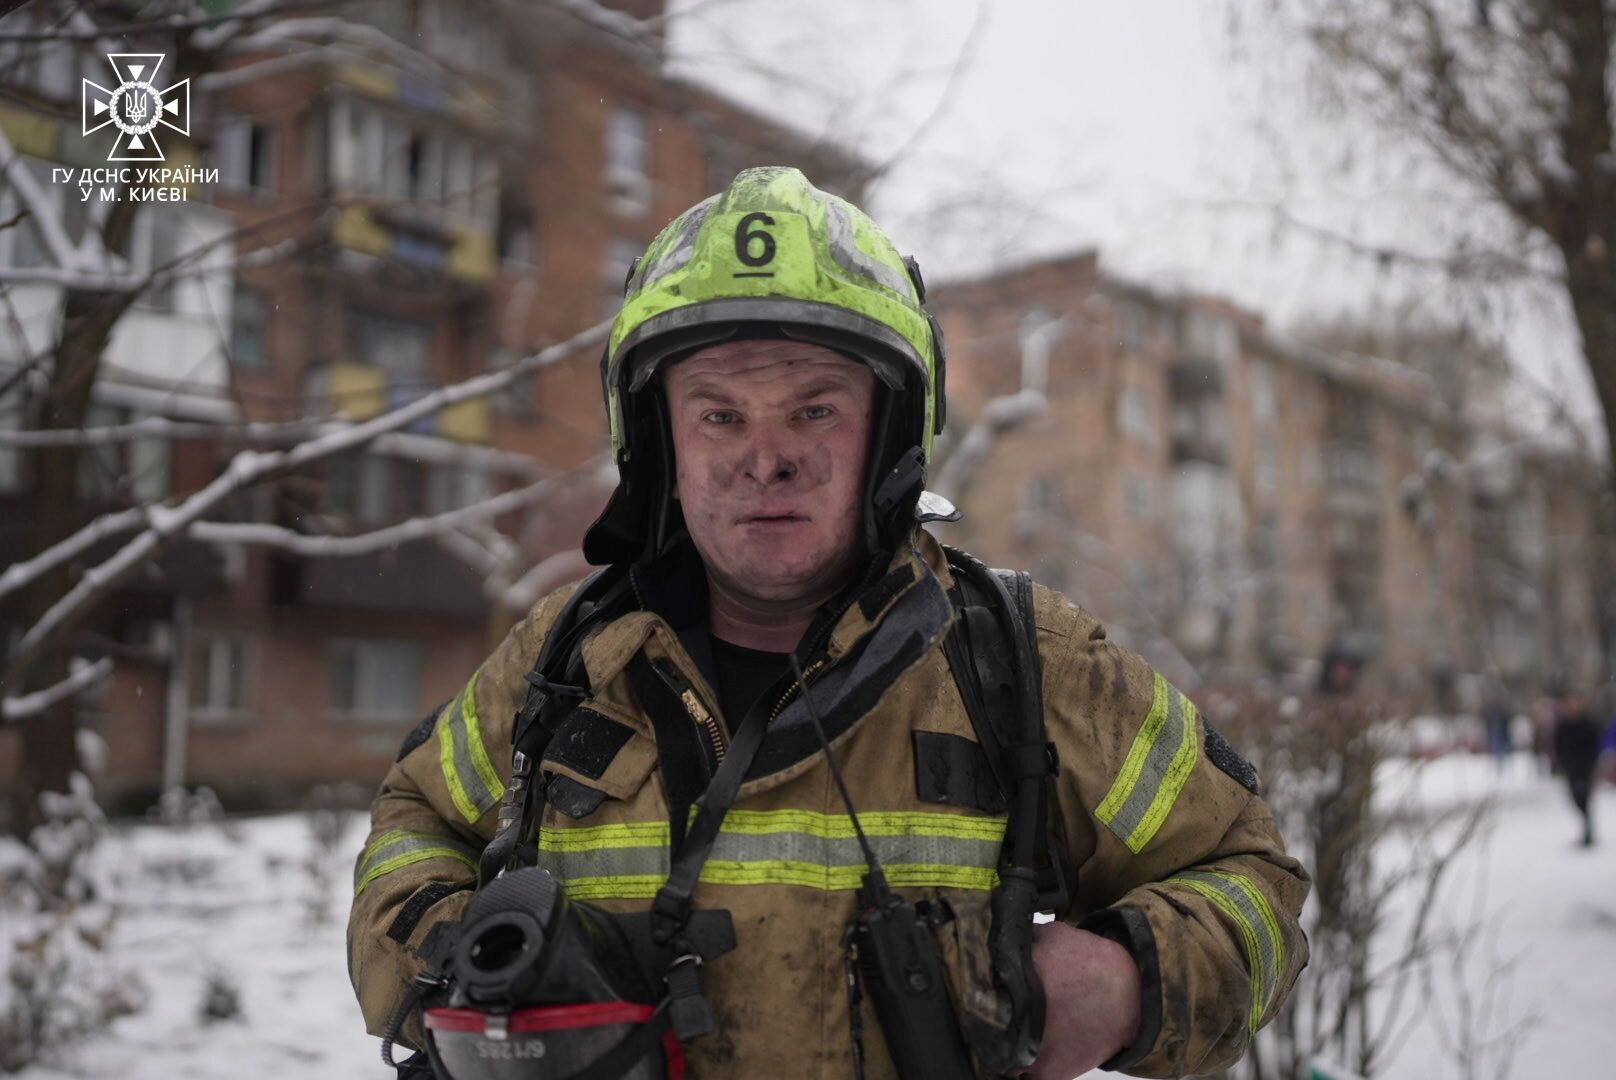 В Киеве произошел пожар в пятиэтажке: женщину и двоих детей госпитализировали. Фото